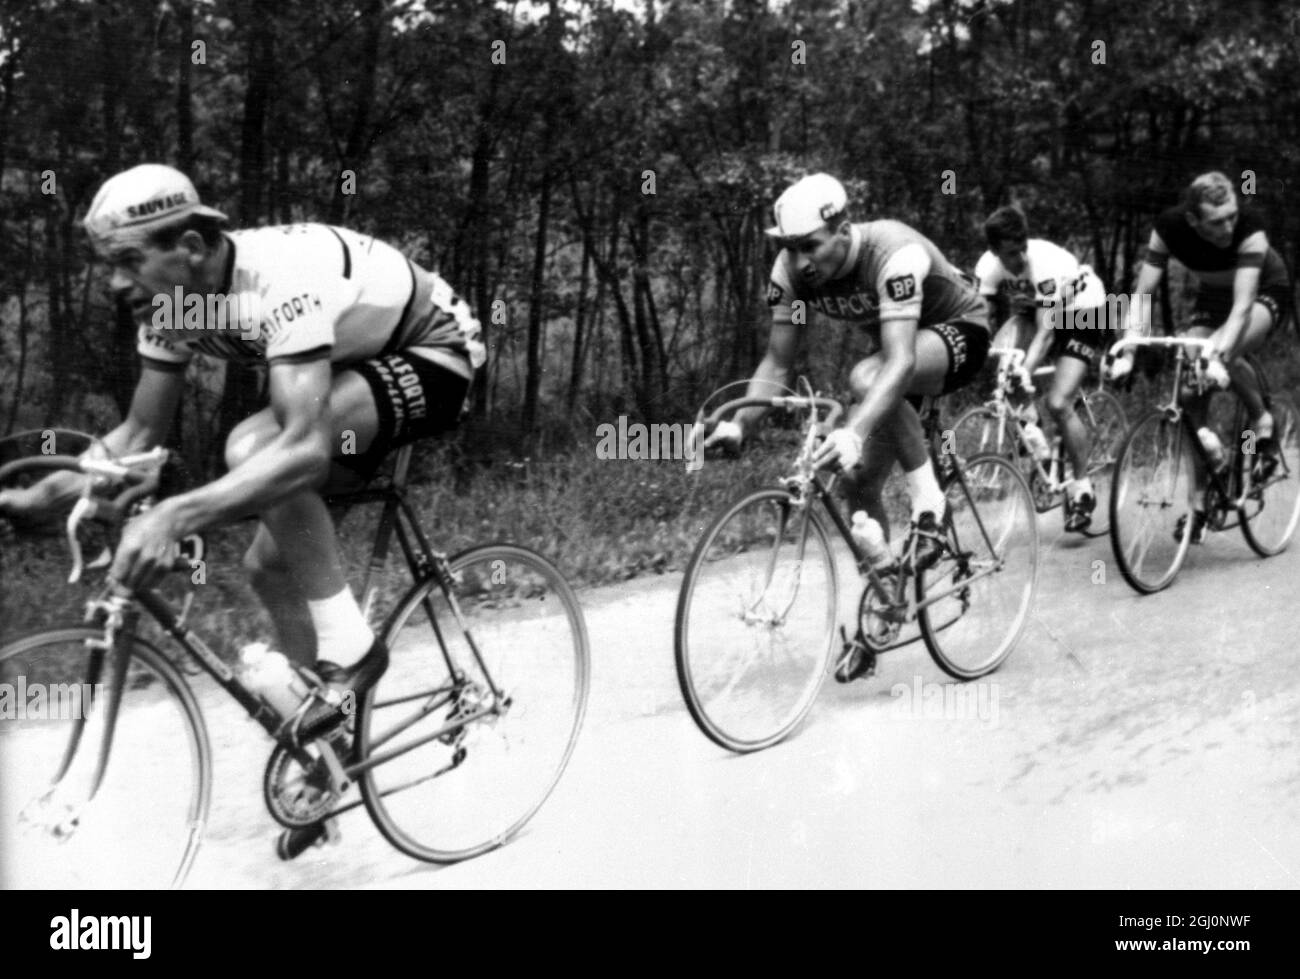 Sur la première moitié du premier tour de la course cycliste Tour de France aujourd'hui sont LtoR Andre Foucher - France ; Raymond Poulidor - France ; Tommy Simpson - Grande-Bretagne et Edward Sels - Belgique . Liège , Belgique 22 juin 1965 Banque D'Images